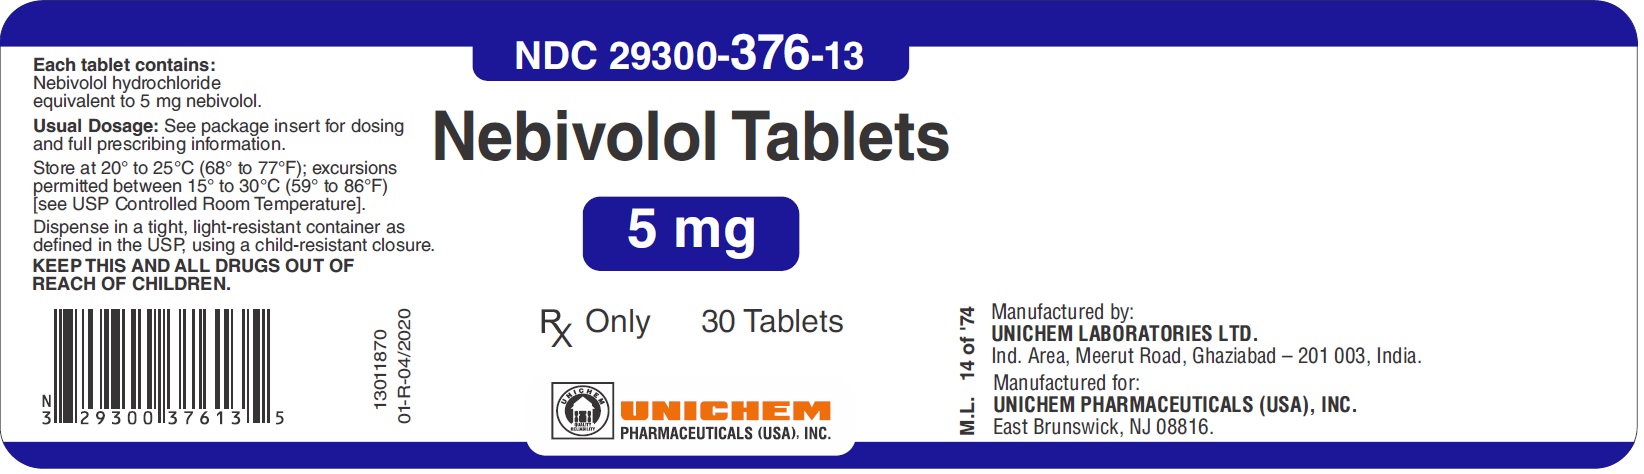 Nebivolol Tablets 5 mg 30 Tablets